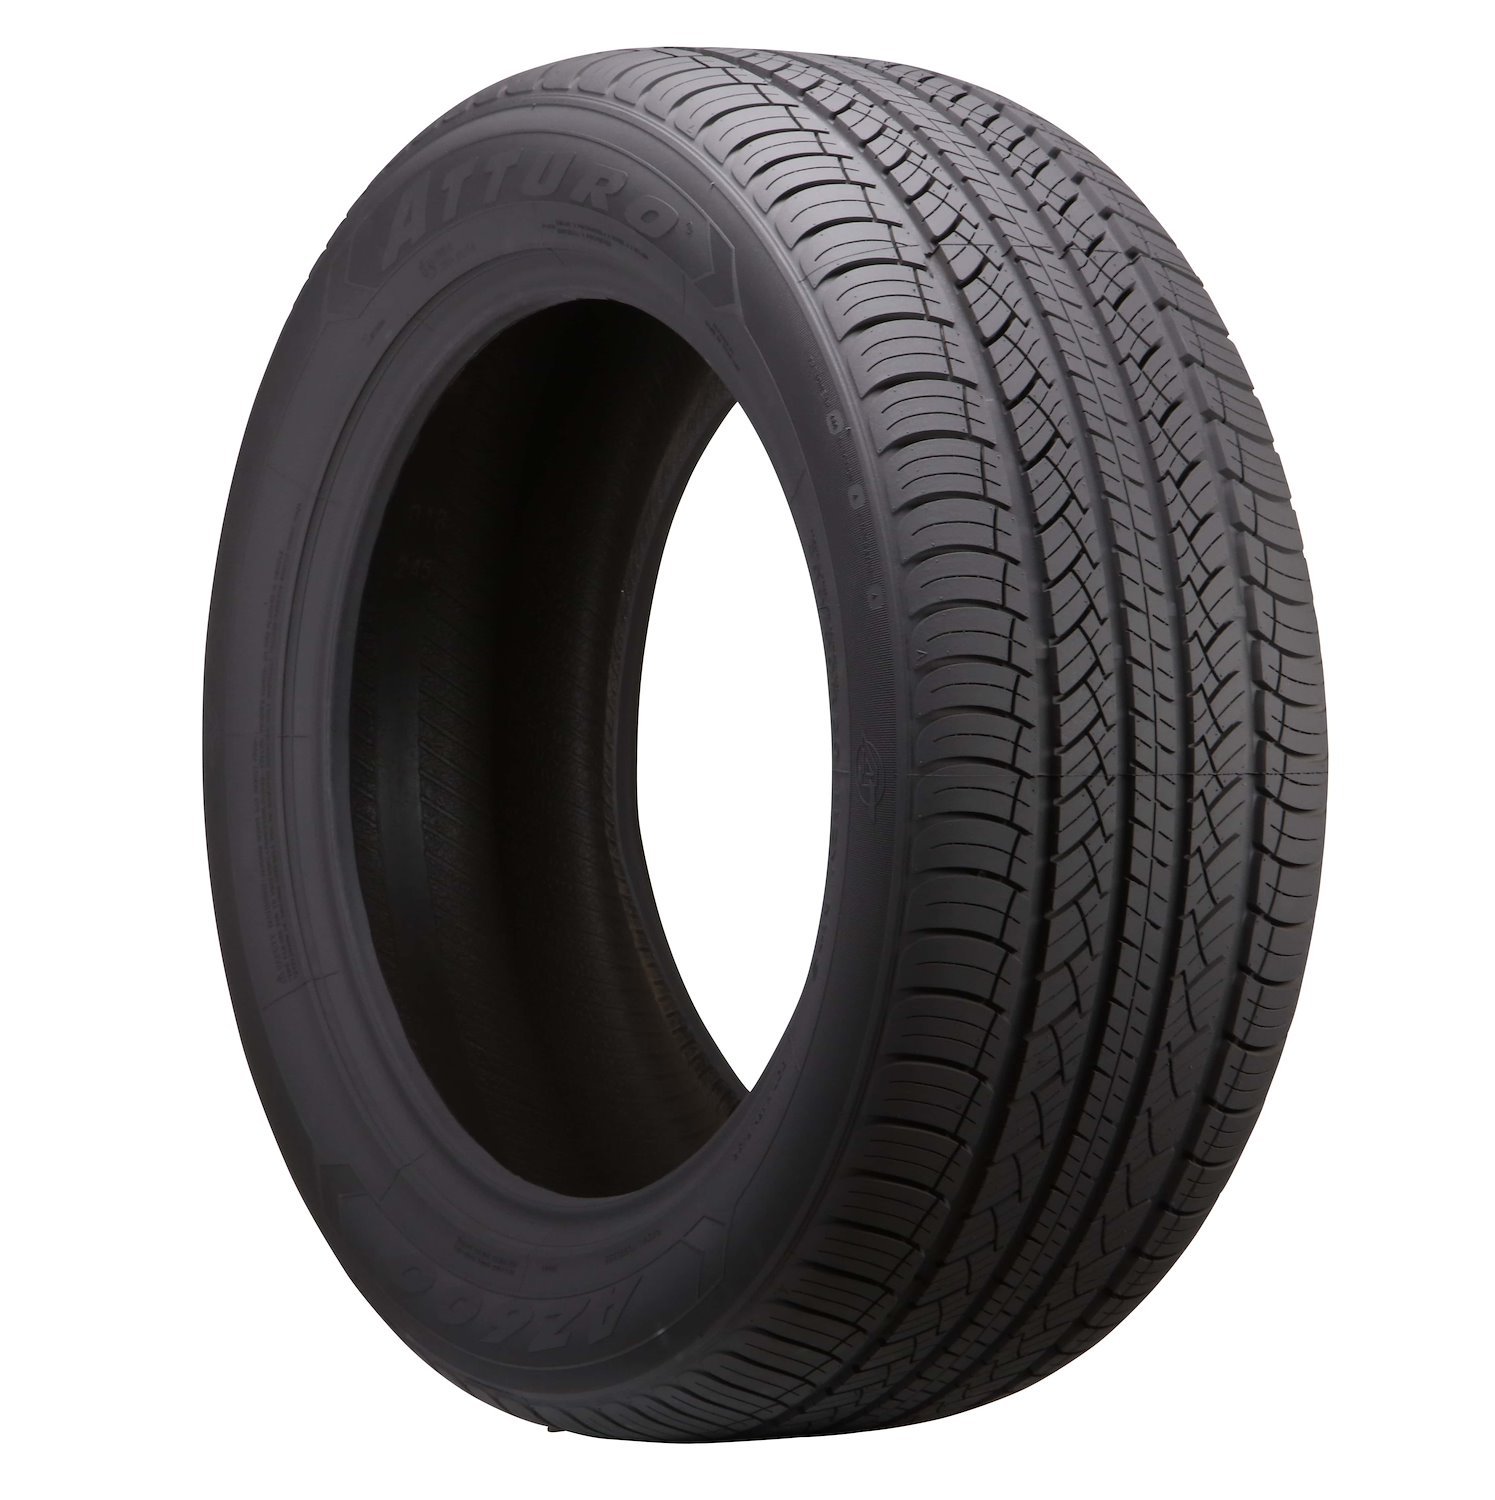 AZ600-I0117302 AZ 600 Tire, 215/65R16